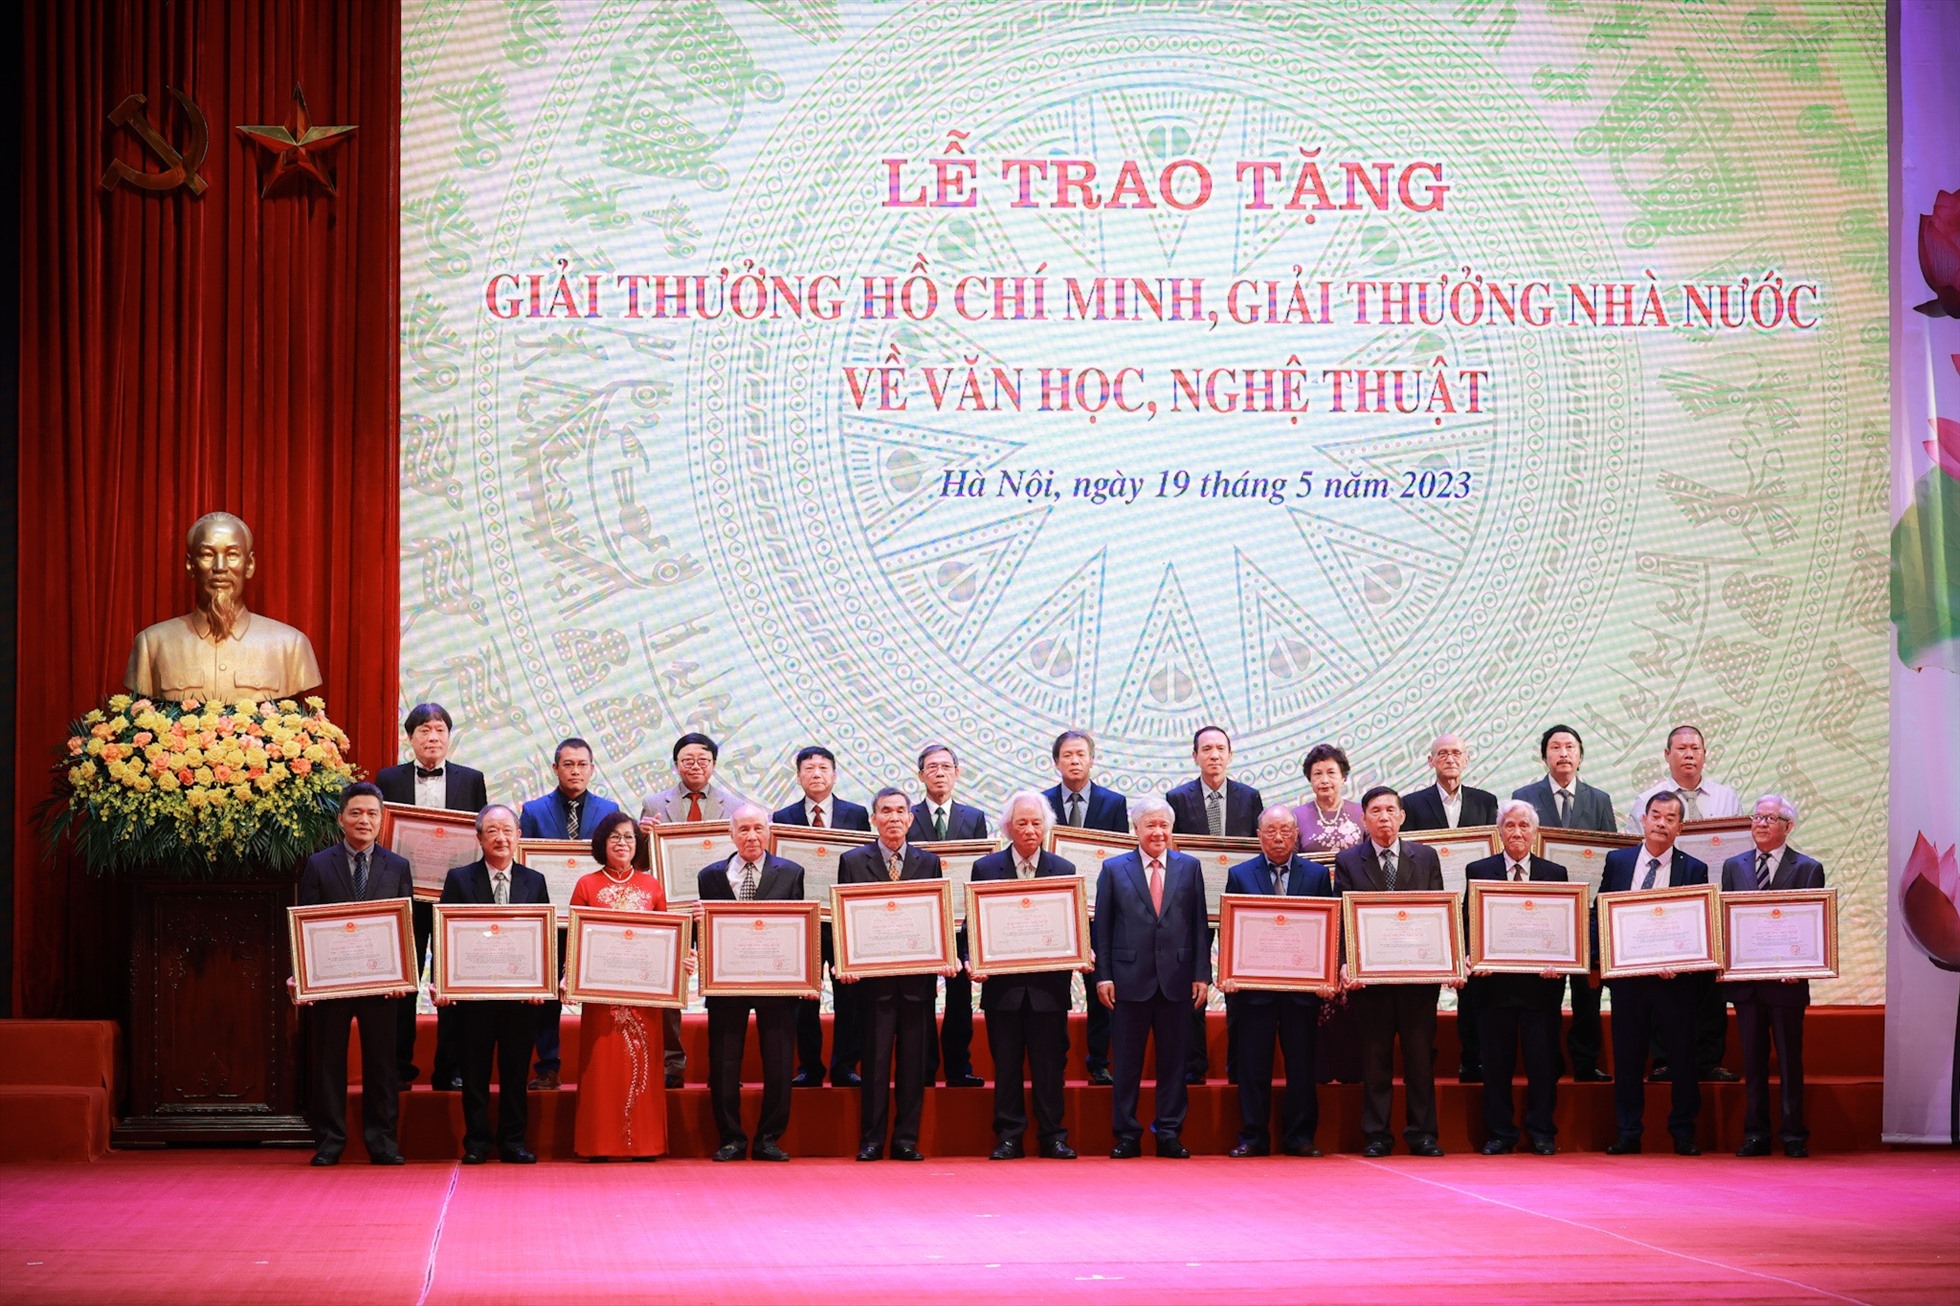 Trong đợt này có 128 tác giả, đồng tác giả được tặng Giải thưởng Hồ Chí Minh, Giải thưởng Nhà nước về Văn học nghệ thuật. Ảnh: Hải Nguyễn